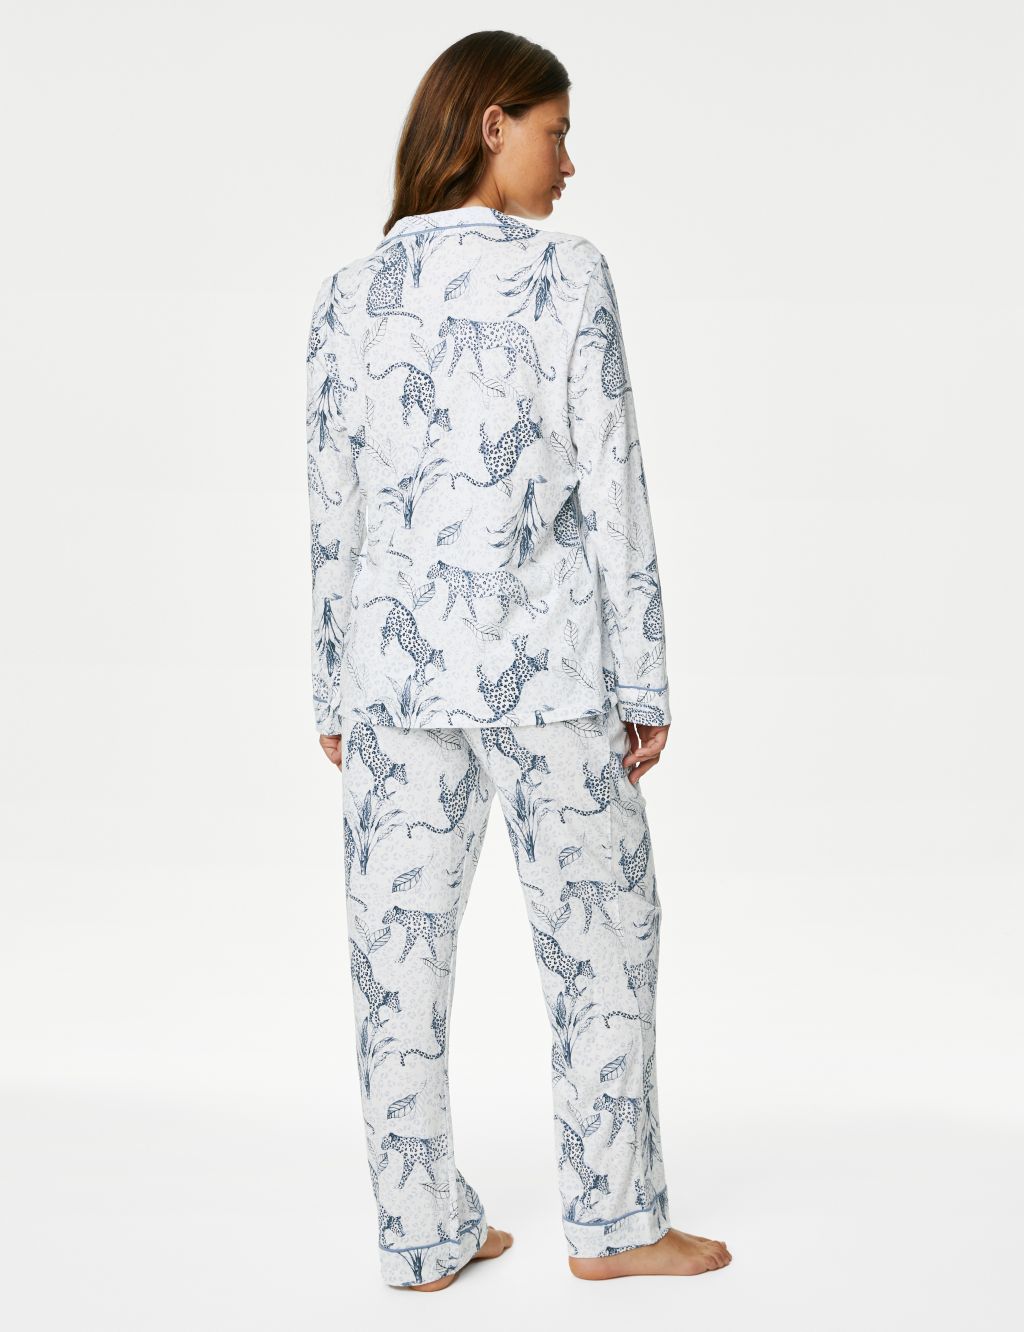 Leopard Print Pyjama Set image 7